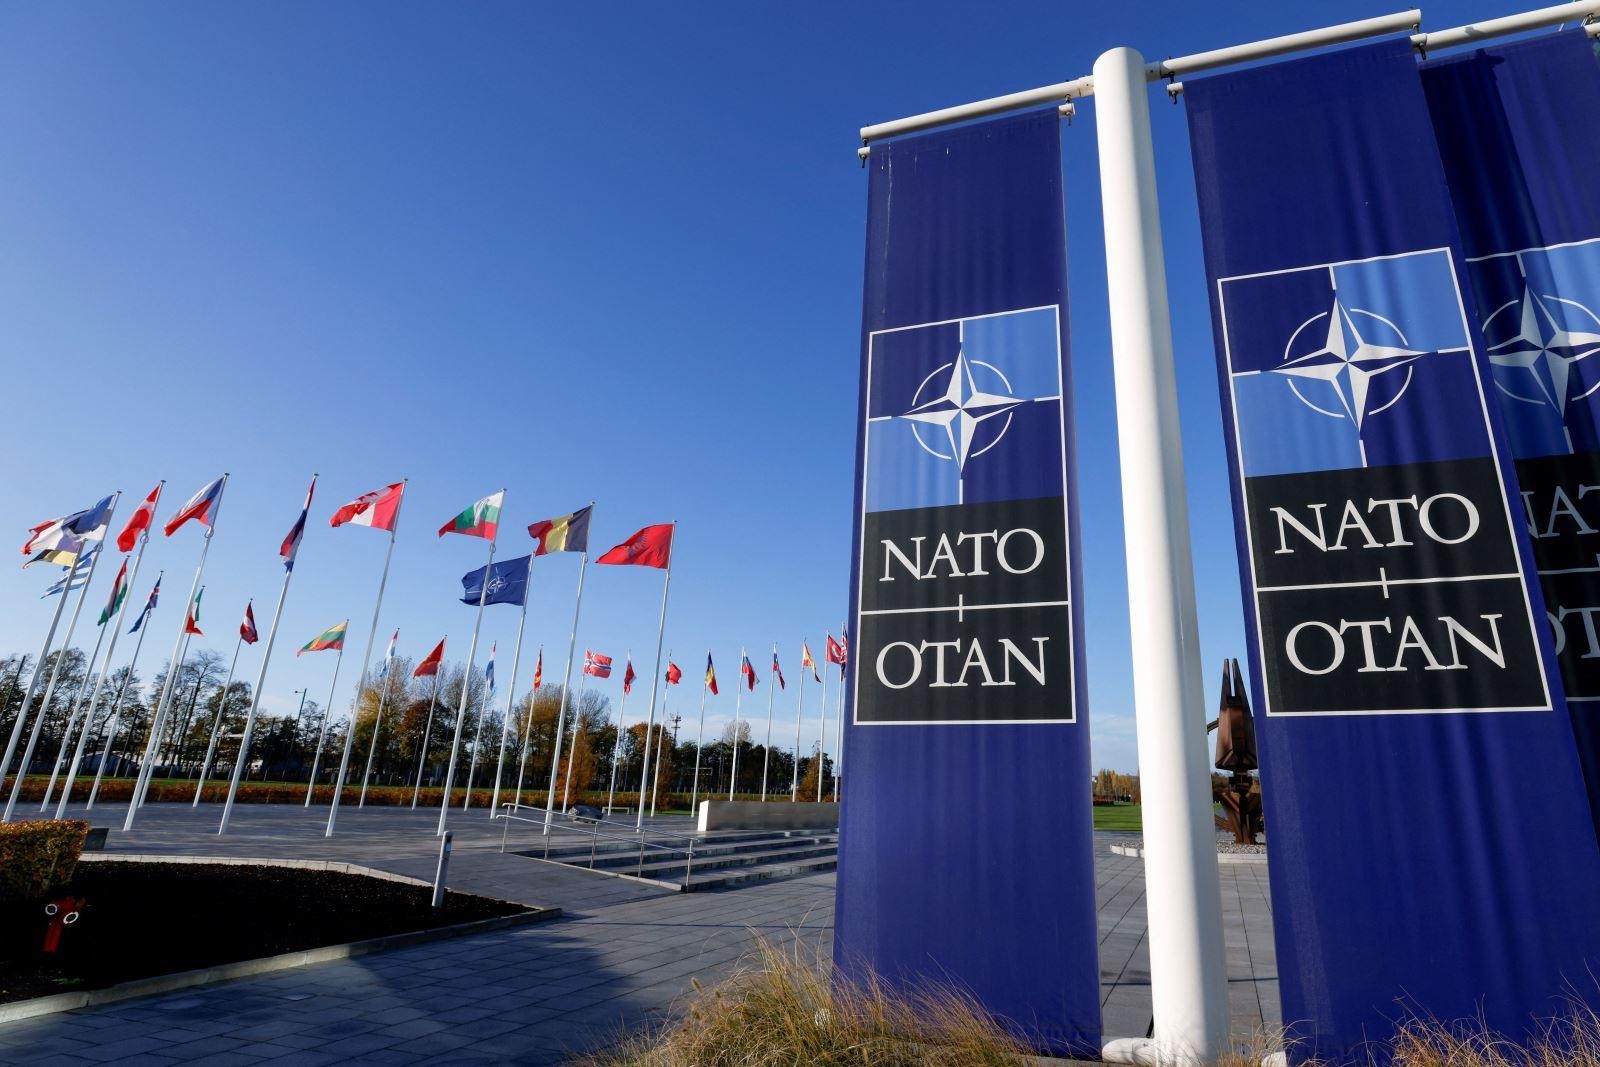 Thế kỷ 20 bắt đầu từ năm nào - Tổ chức NATO được thành lập vào giữa thế kỷ 20